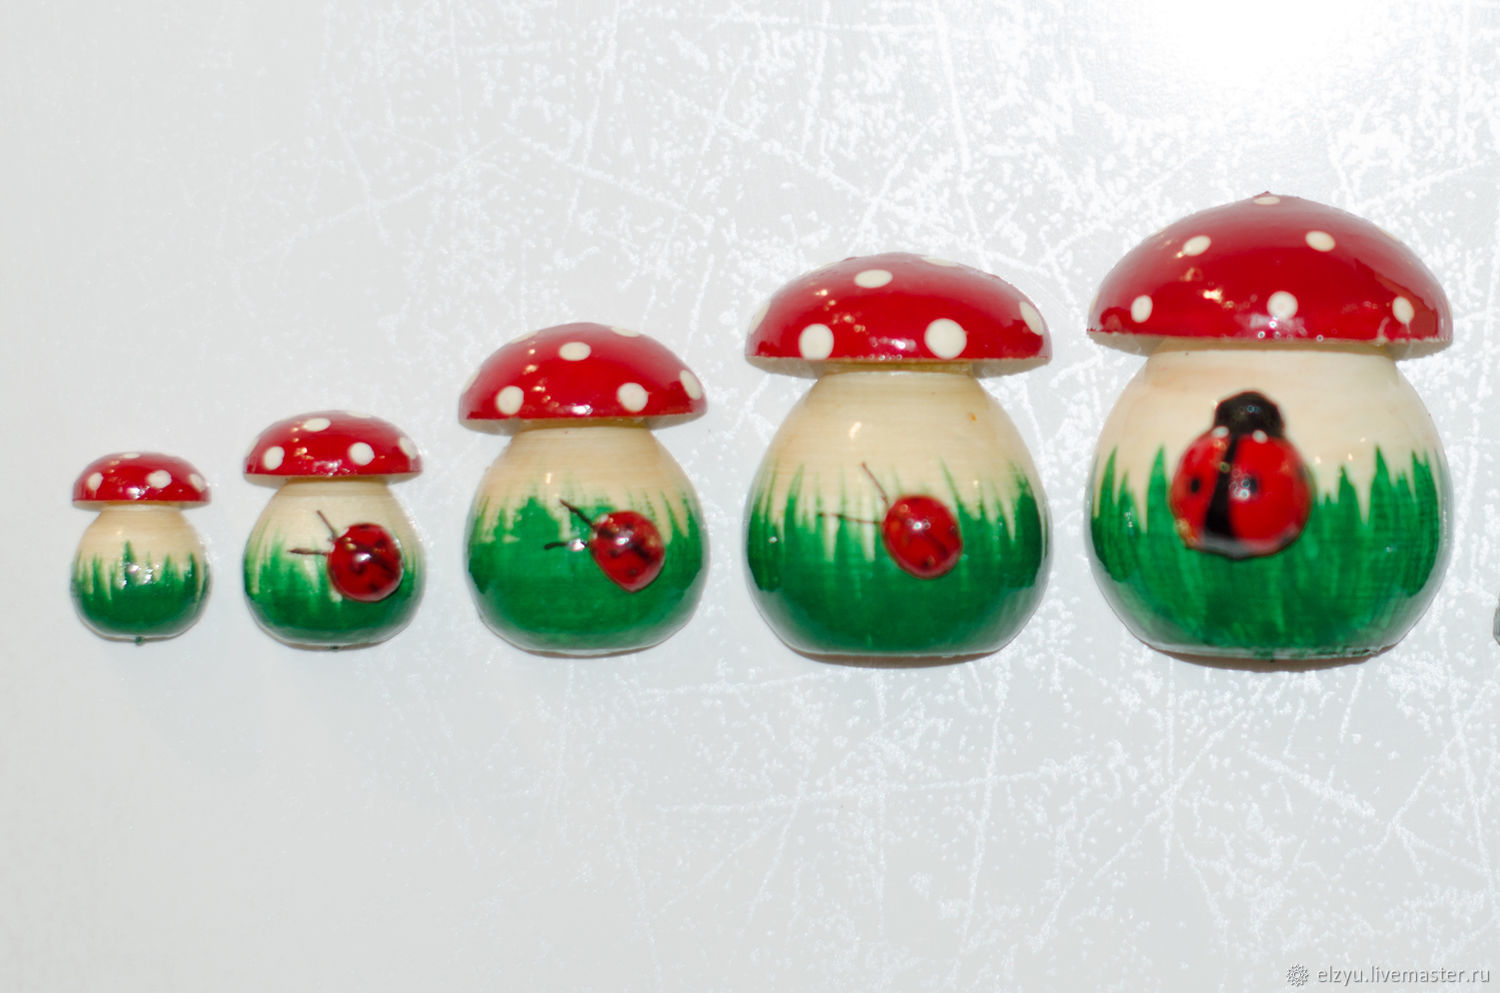 mushroom magnet in stock, Magnets, Nizhny Novgorod,  Фото №1